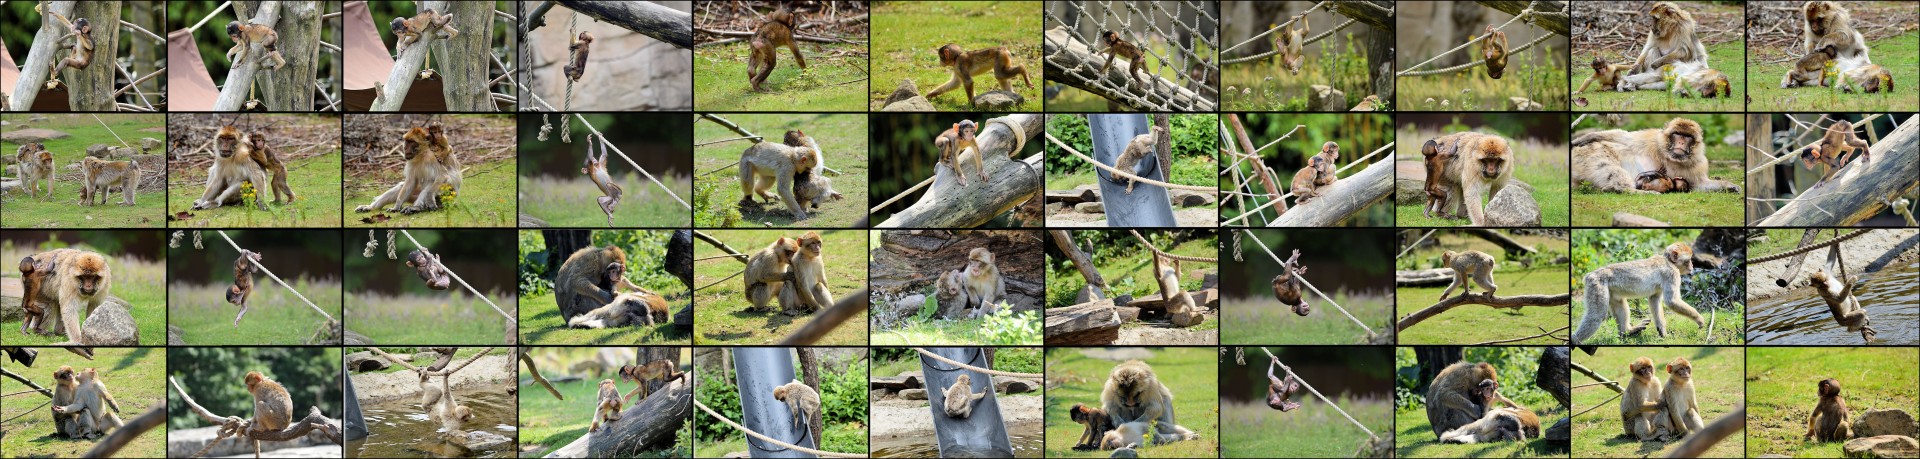 wallpaper monkey ape free photo